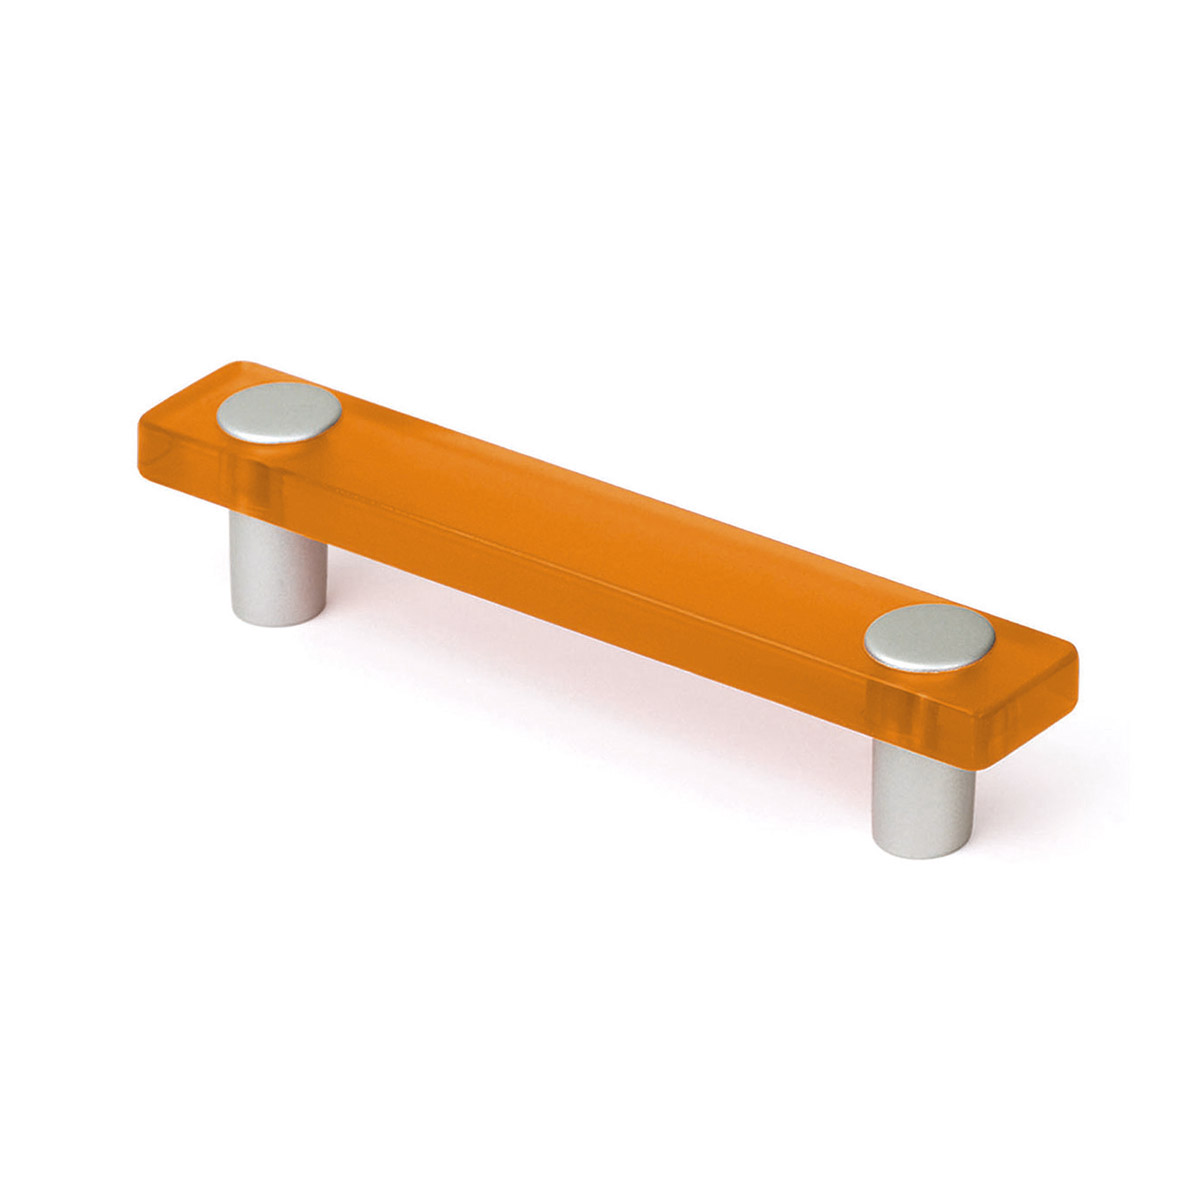 Asa de plástico con acabado naranja, dimensiones: 127x20x27mm entrepuntos: 96mm